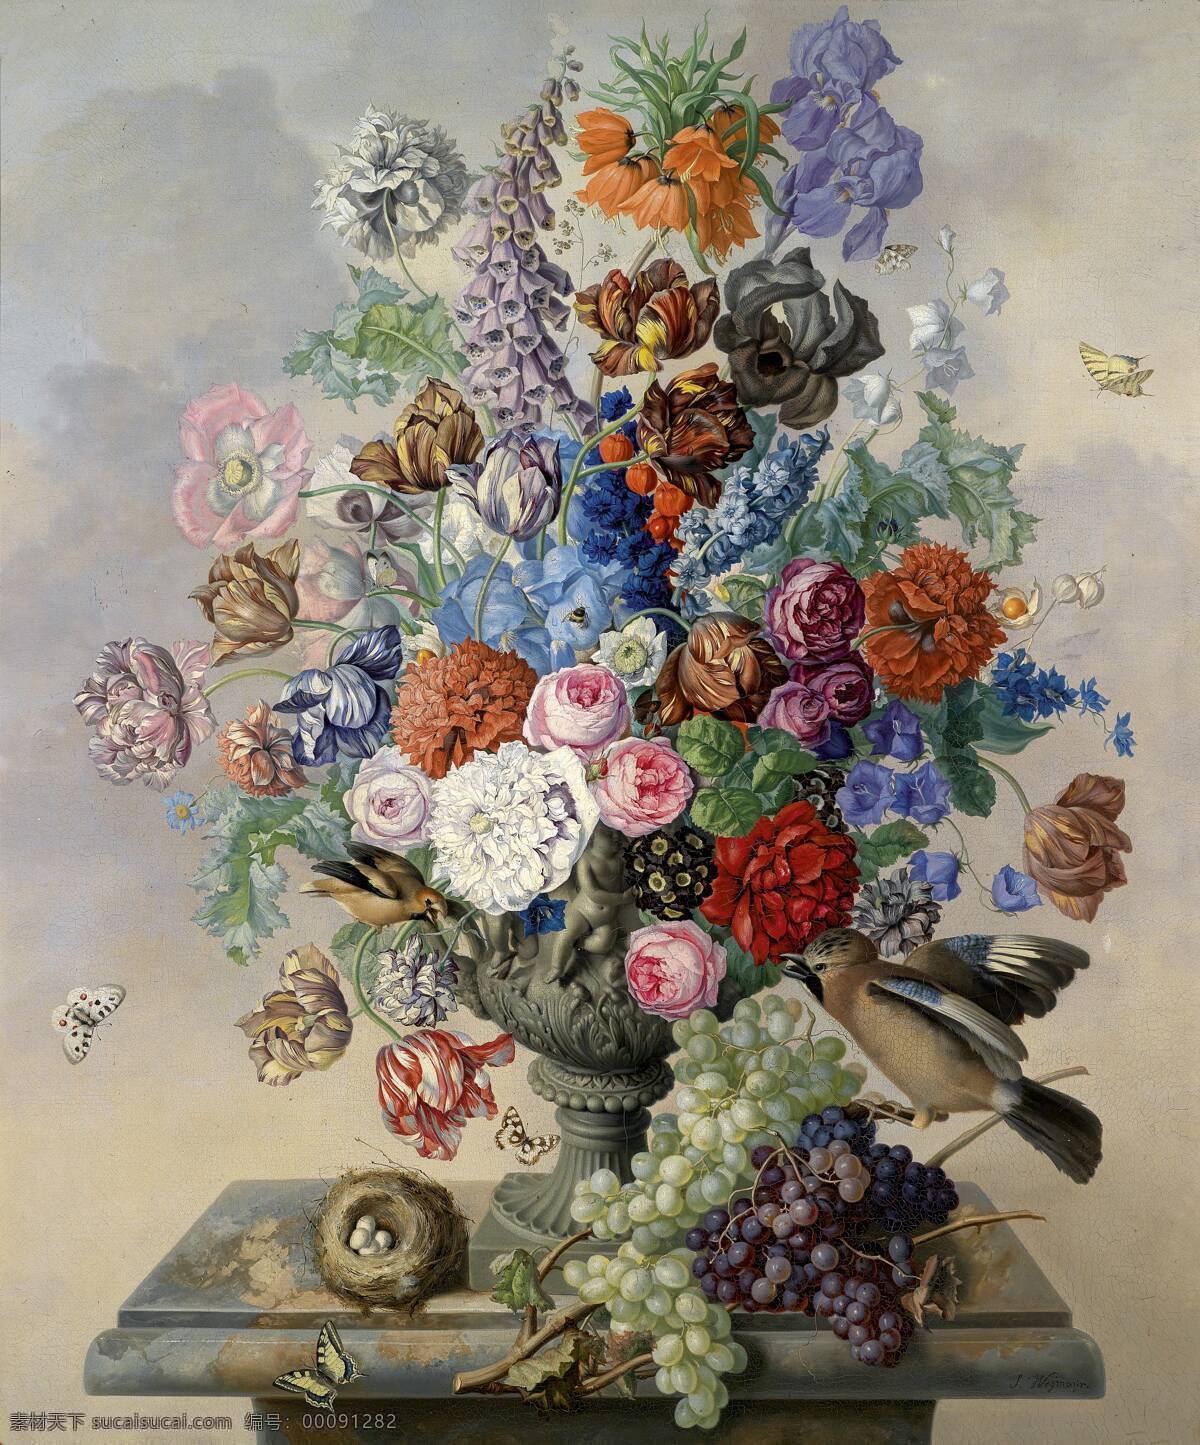 静物鲜花 永恒之美 混搭鲜花 鸟儿 鸟蛋 花蝴蝶 葡萄 19世纪油画 油画 绘画书法 文化艺术